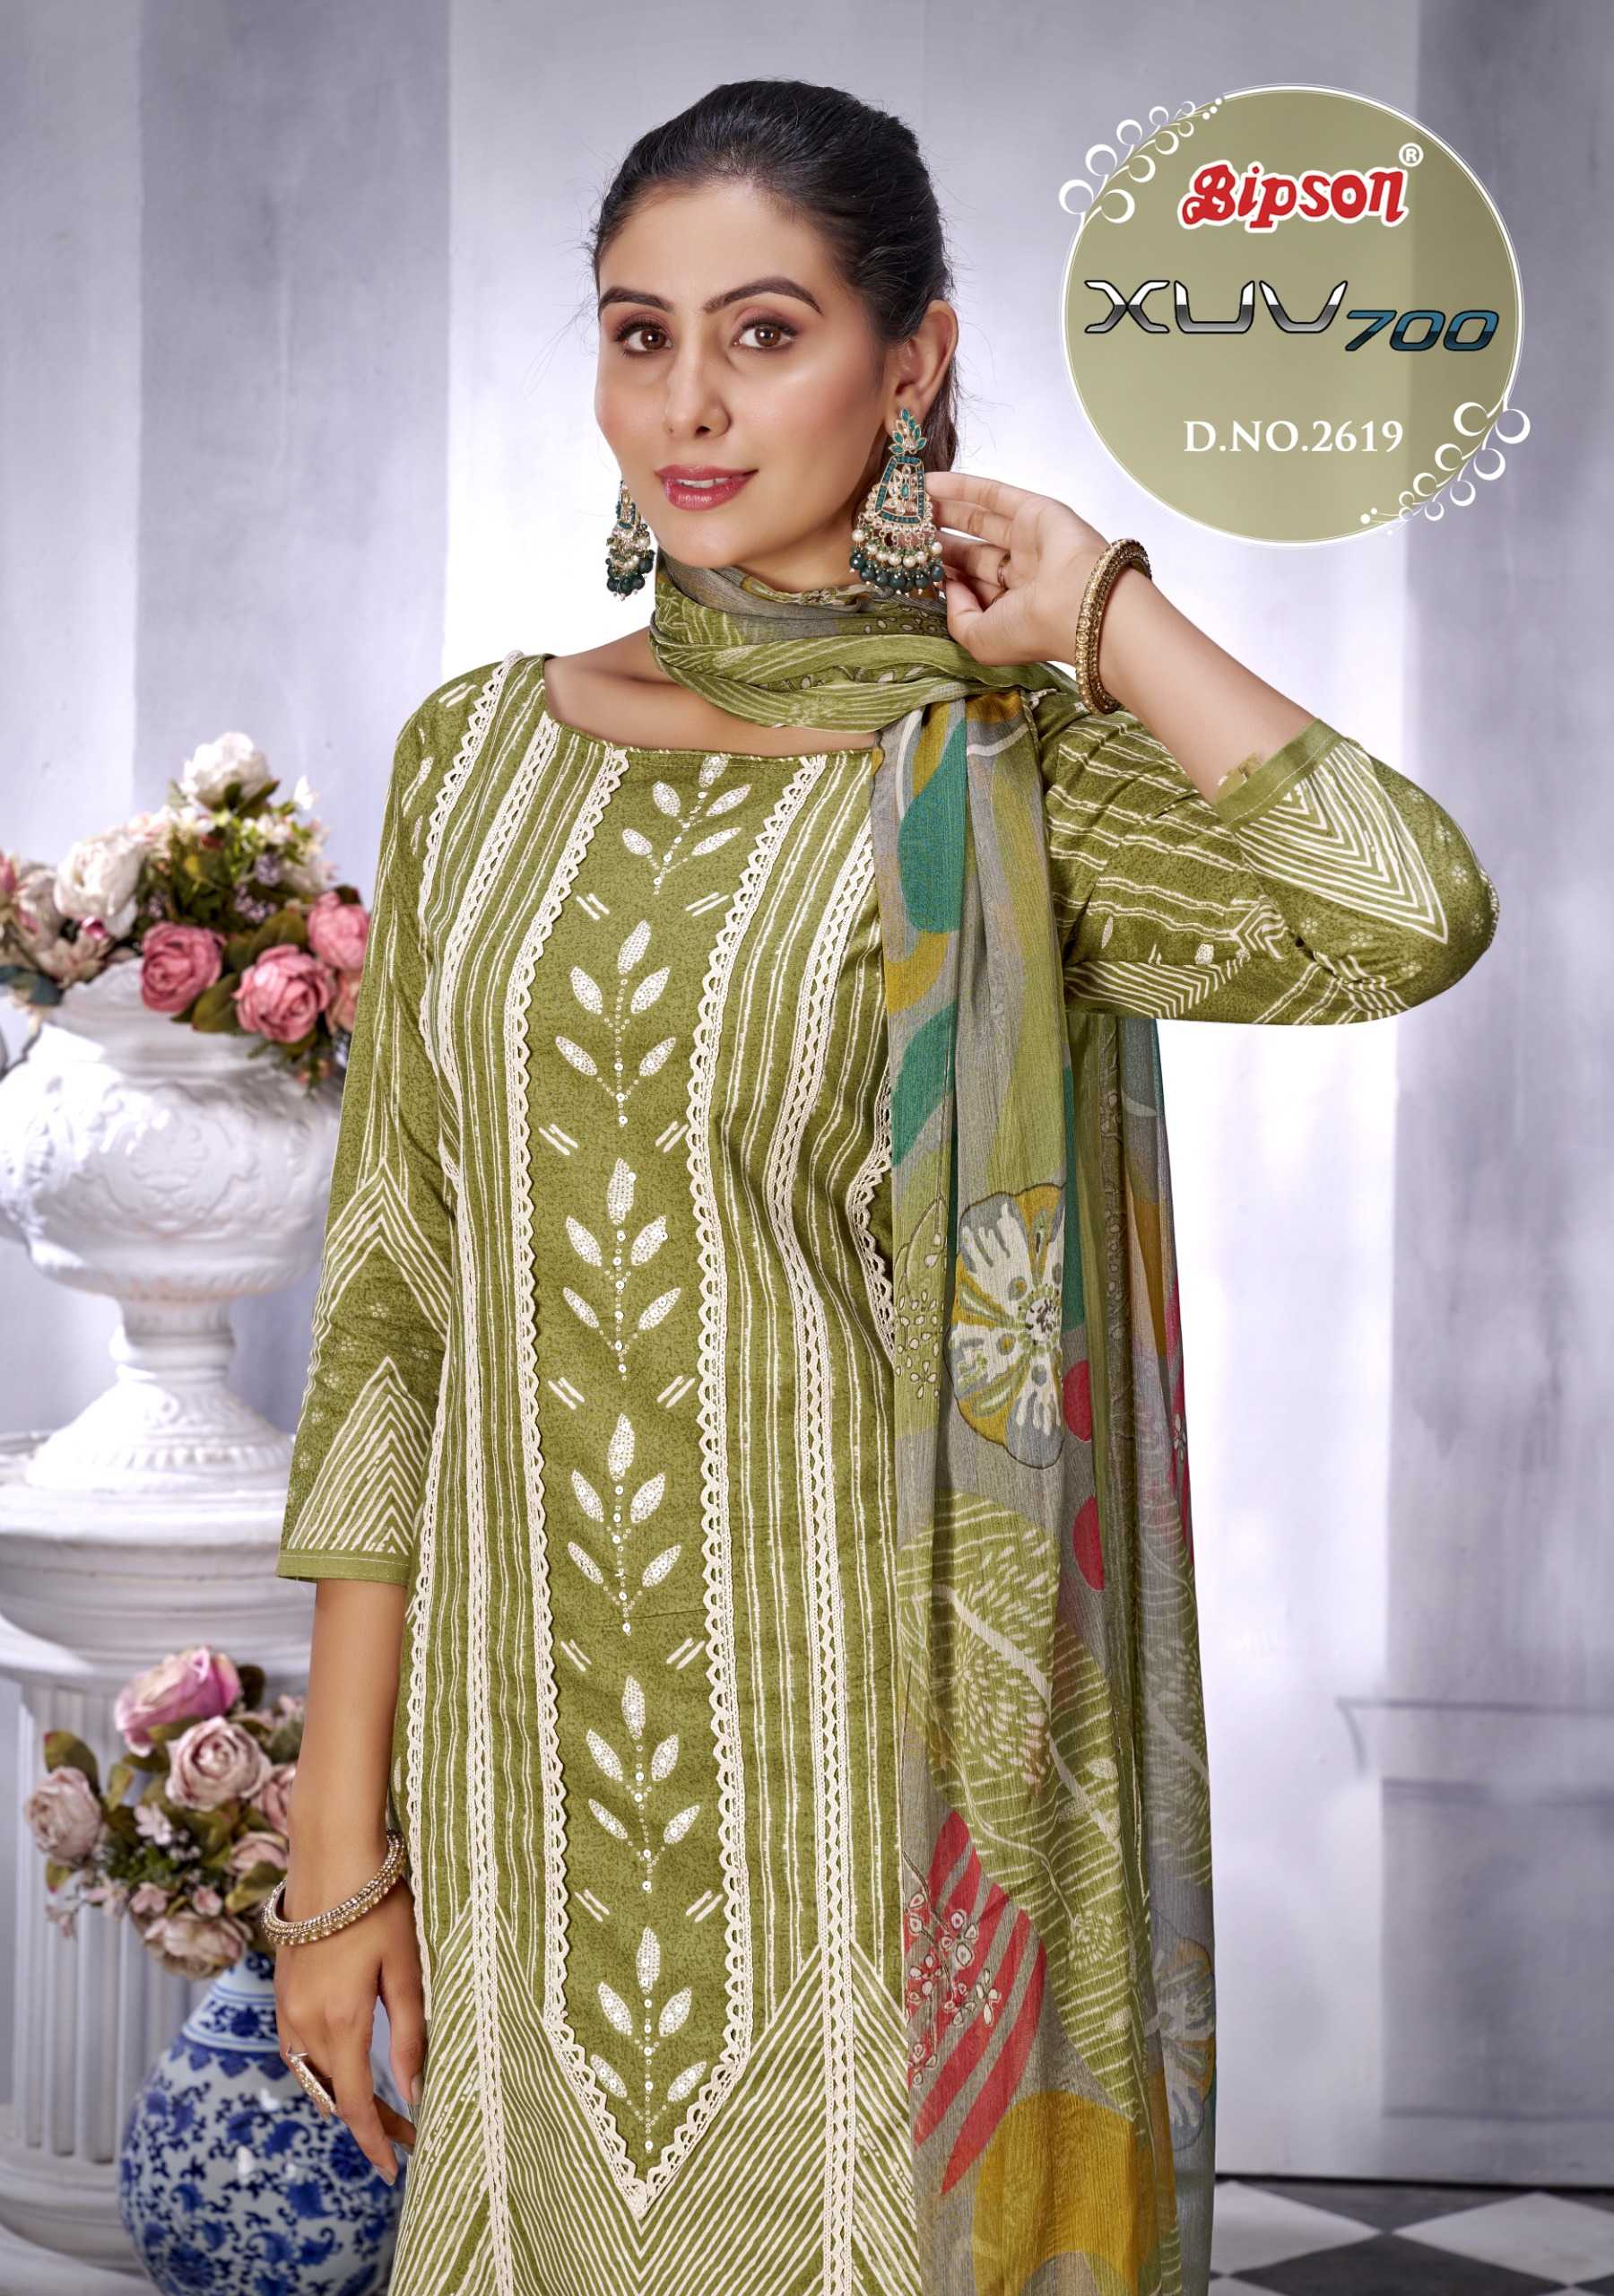 bipson prints presents xuv 2619 fancy unstitch cambric cotton salwar suit